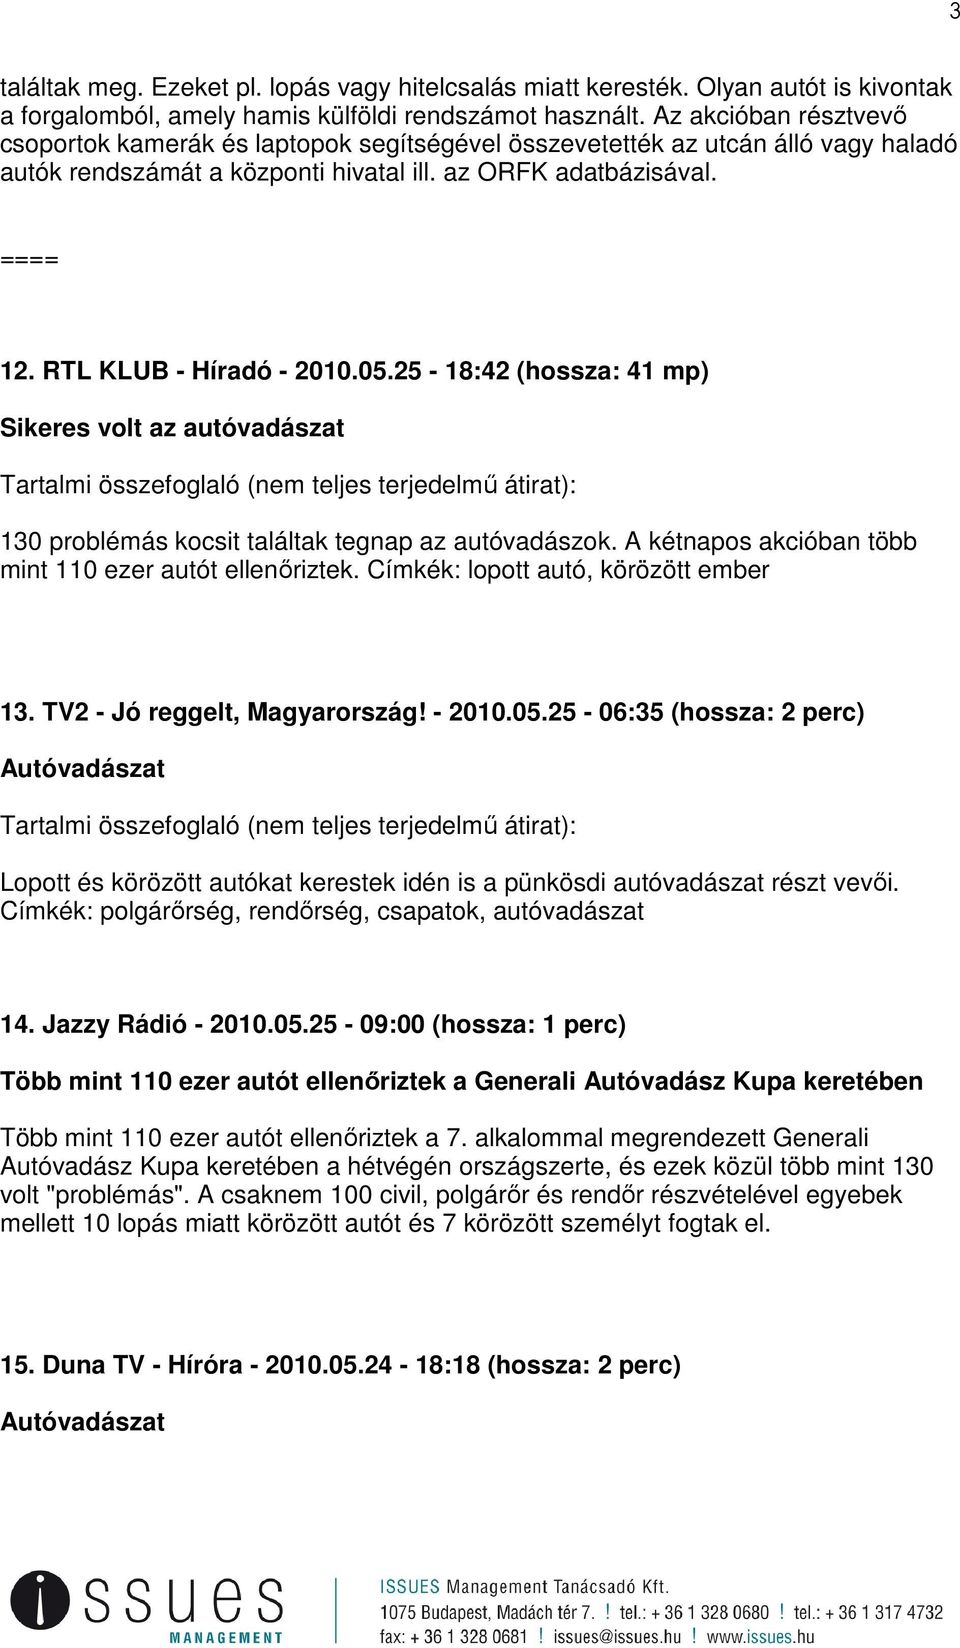 RTL KLUB - Híradó - 2010.05.25-18:42 (hossza: 41 mp) Sikeres volt az autóvadászat Tartalmi összefoglaló (nem teljes terjedelmő átirat): 130 problémás kocsit találtak tegnap az autóvadászok.